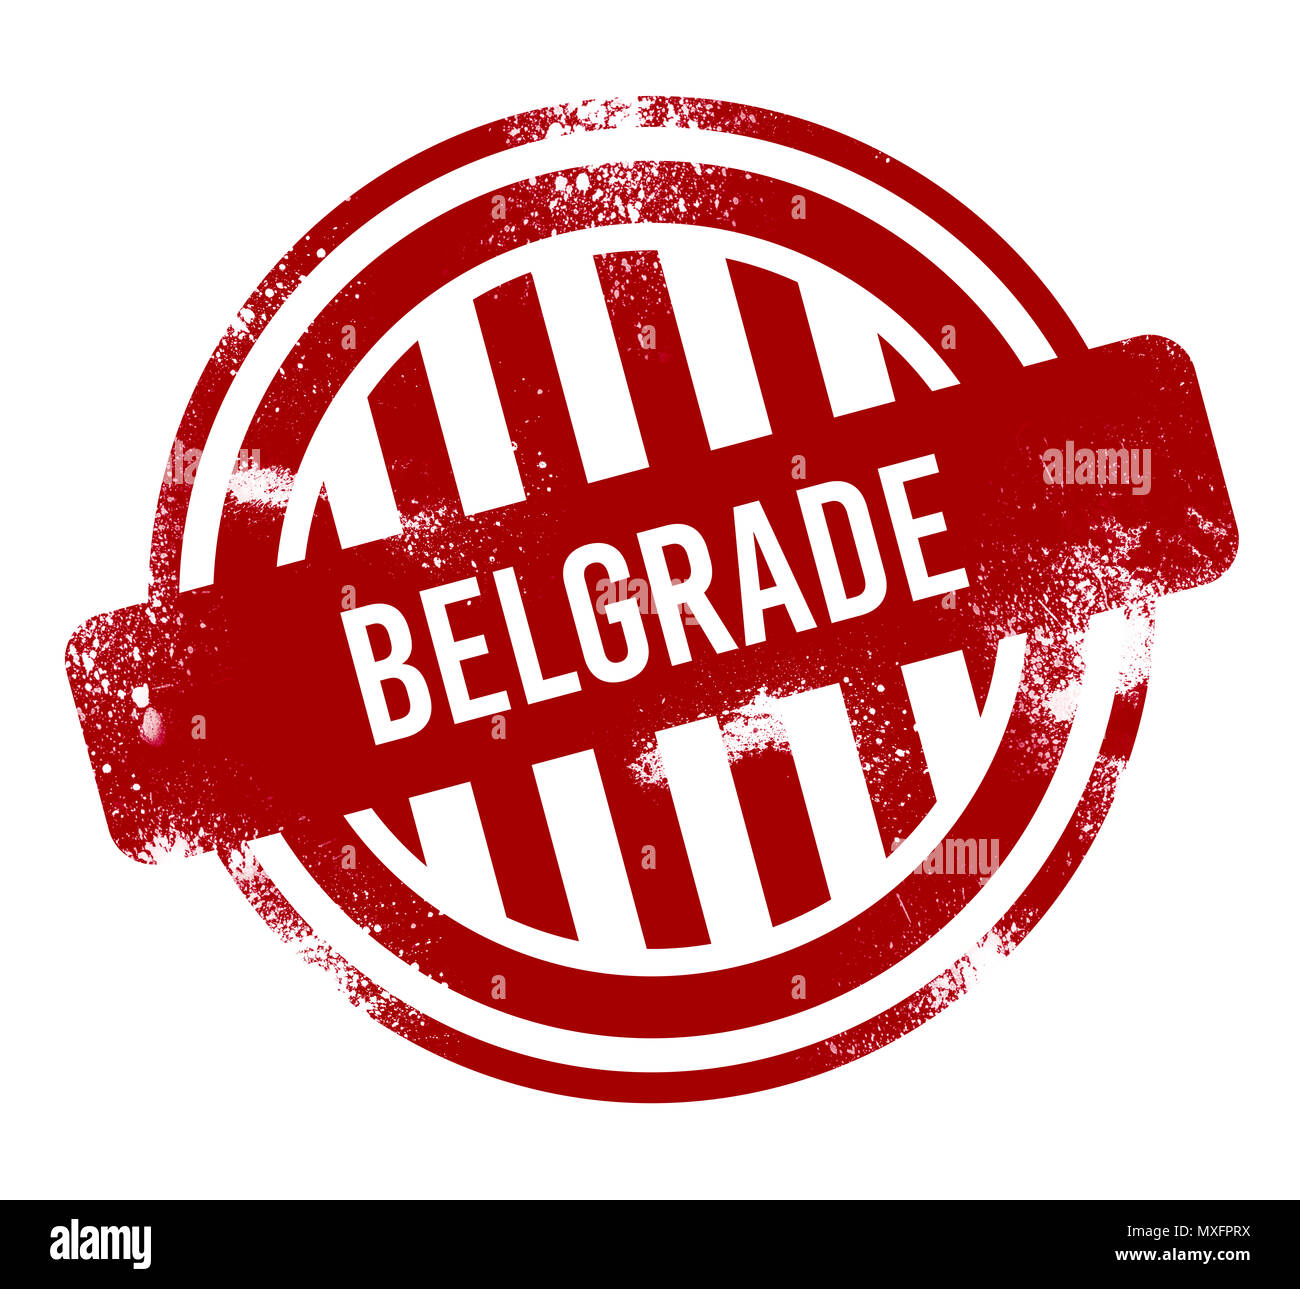 Belgrade - Red grunge button, stamp Stock Photo